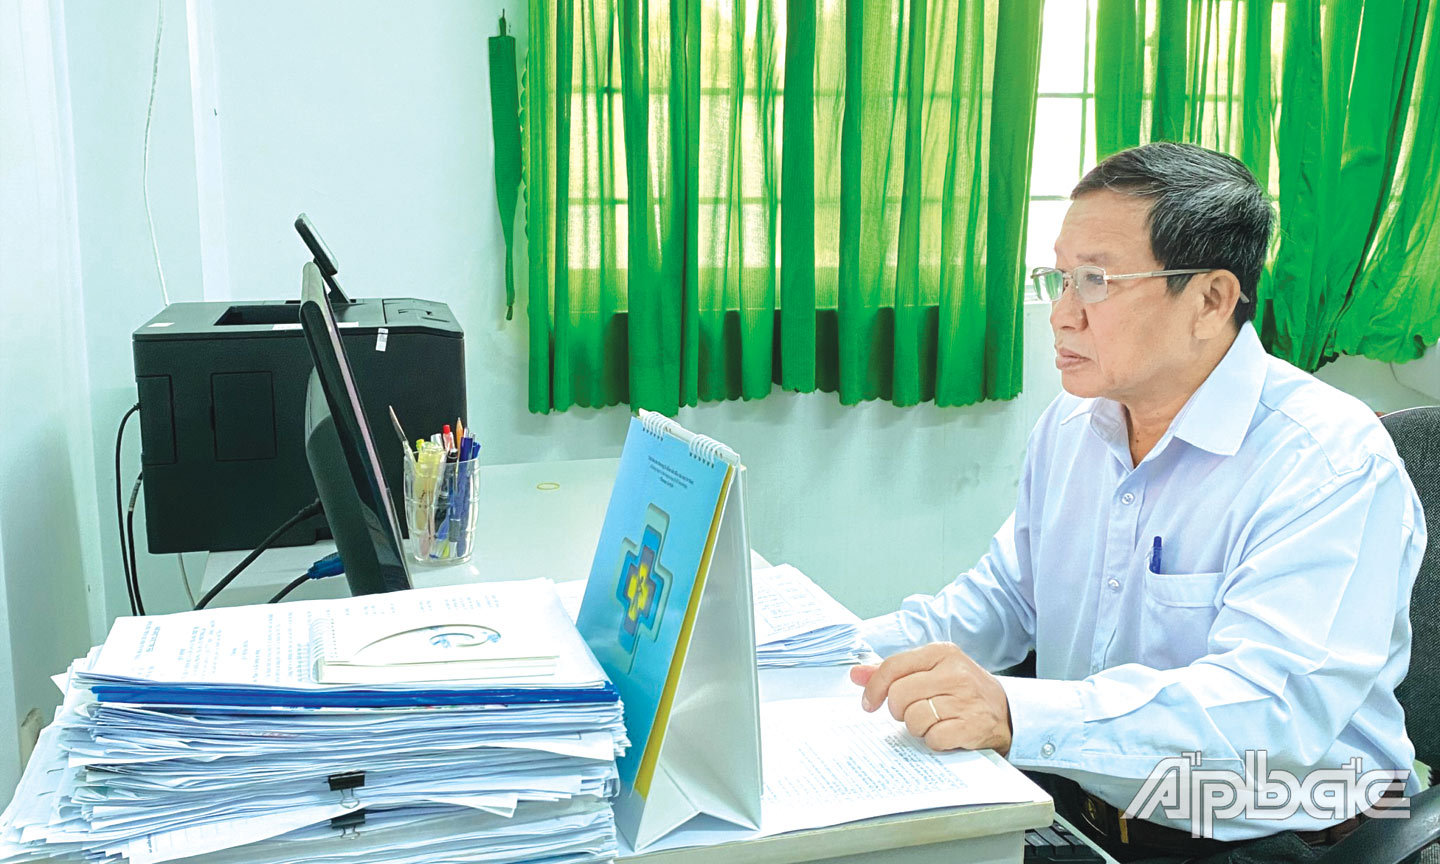  Bác sĩ Nguyễn Ngọc Thành thực hiện nhiệm vụ chuyên môn, giám sát và  báo cáo tình hình dịch bệnh.